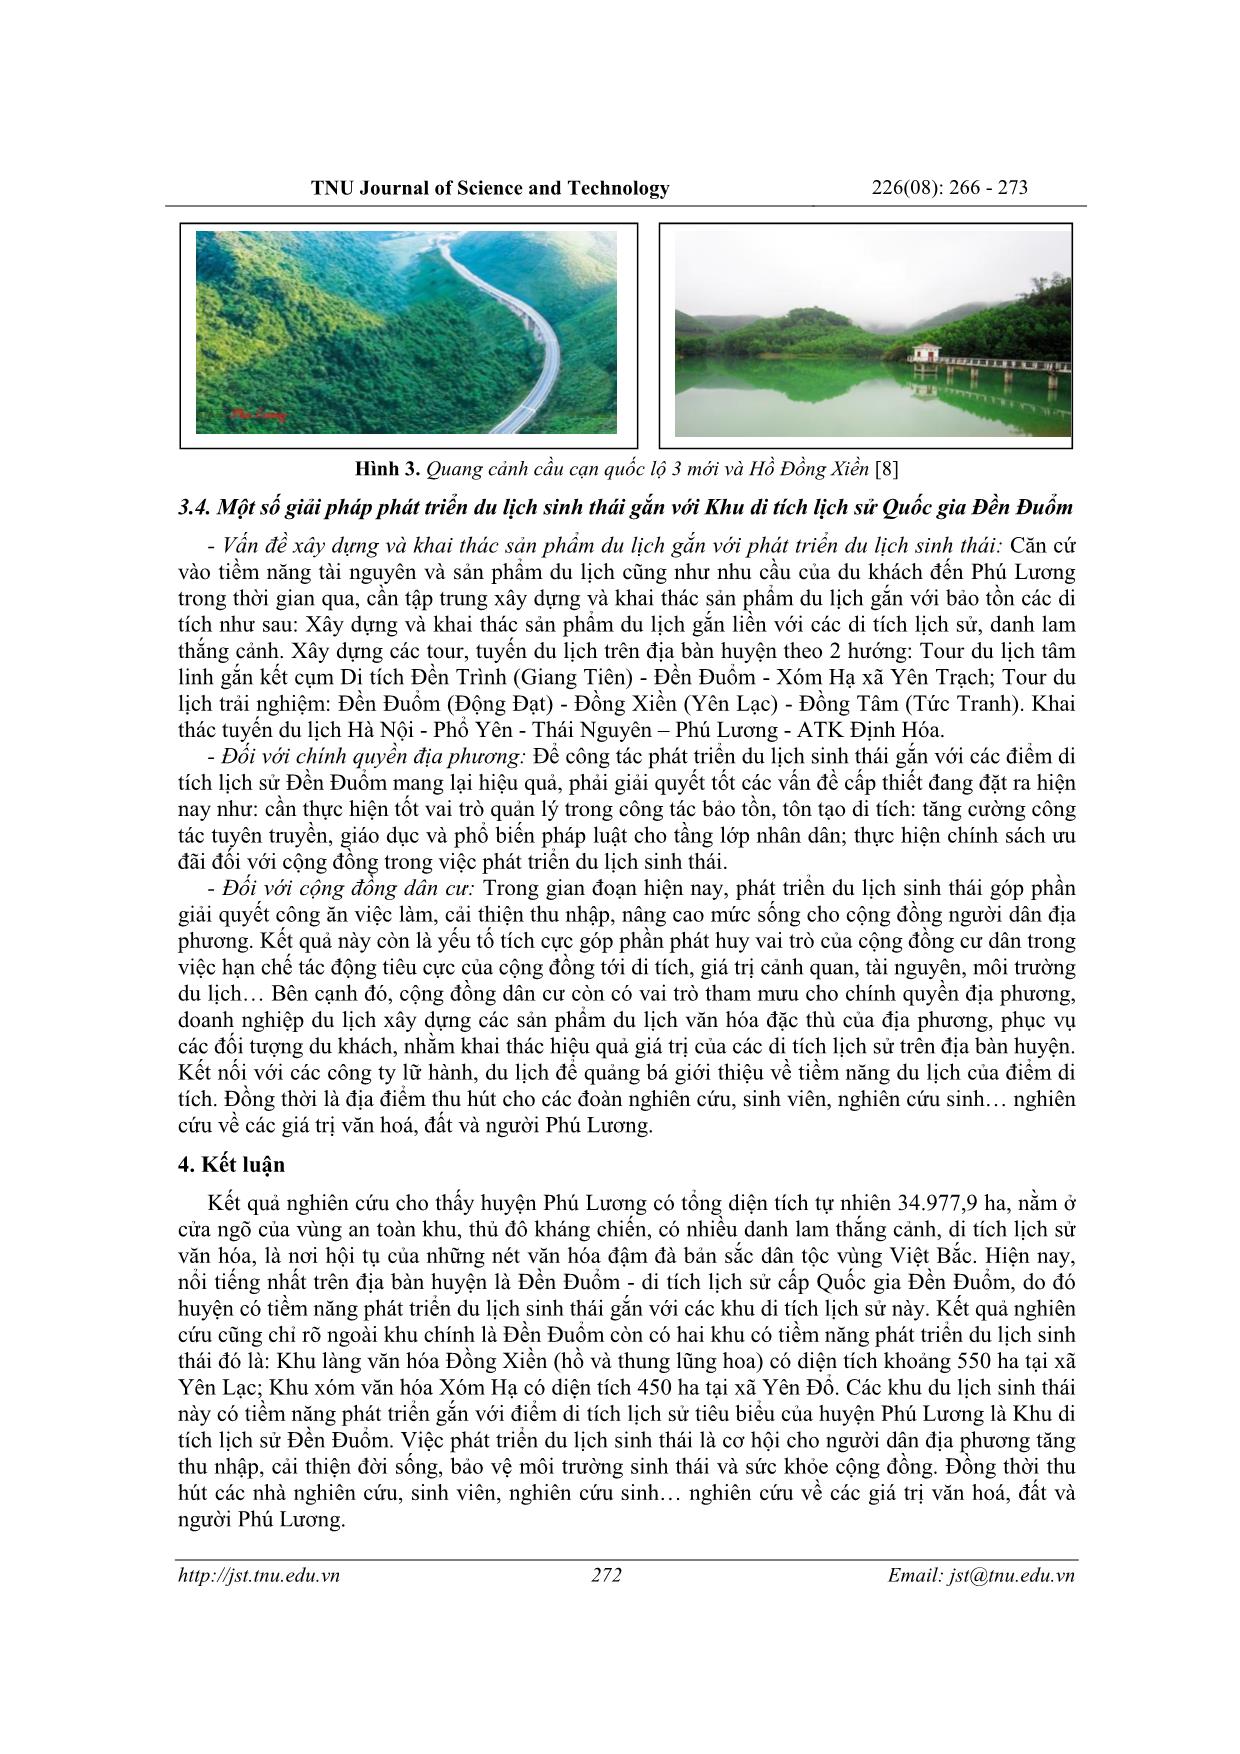 Đánh giá tiềm năng phát triển du lịch sinh thái gắn với khu di tích lịch sử Đền Đuổm, huyện Phú Lương, tỉnh Thái Nguyên trang 7